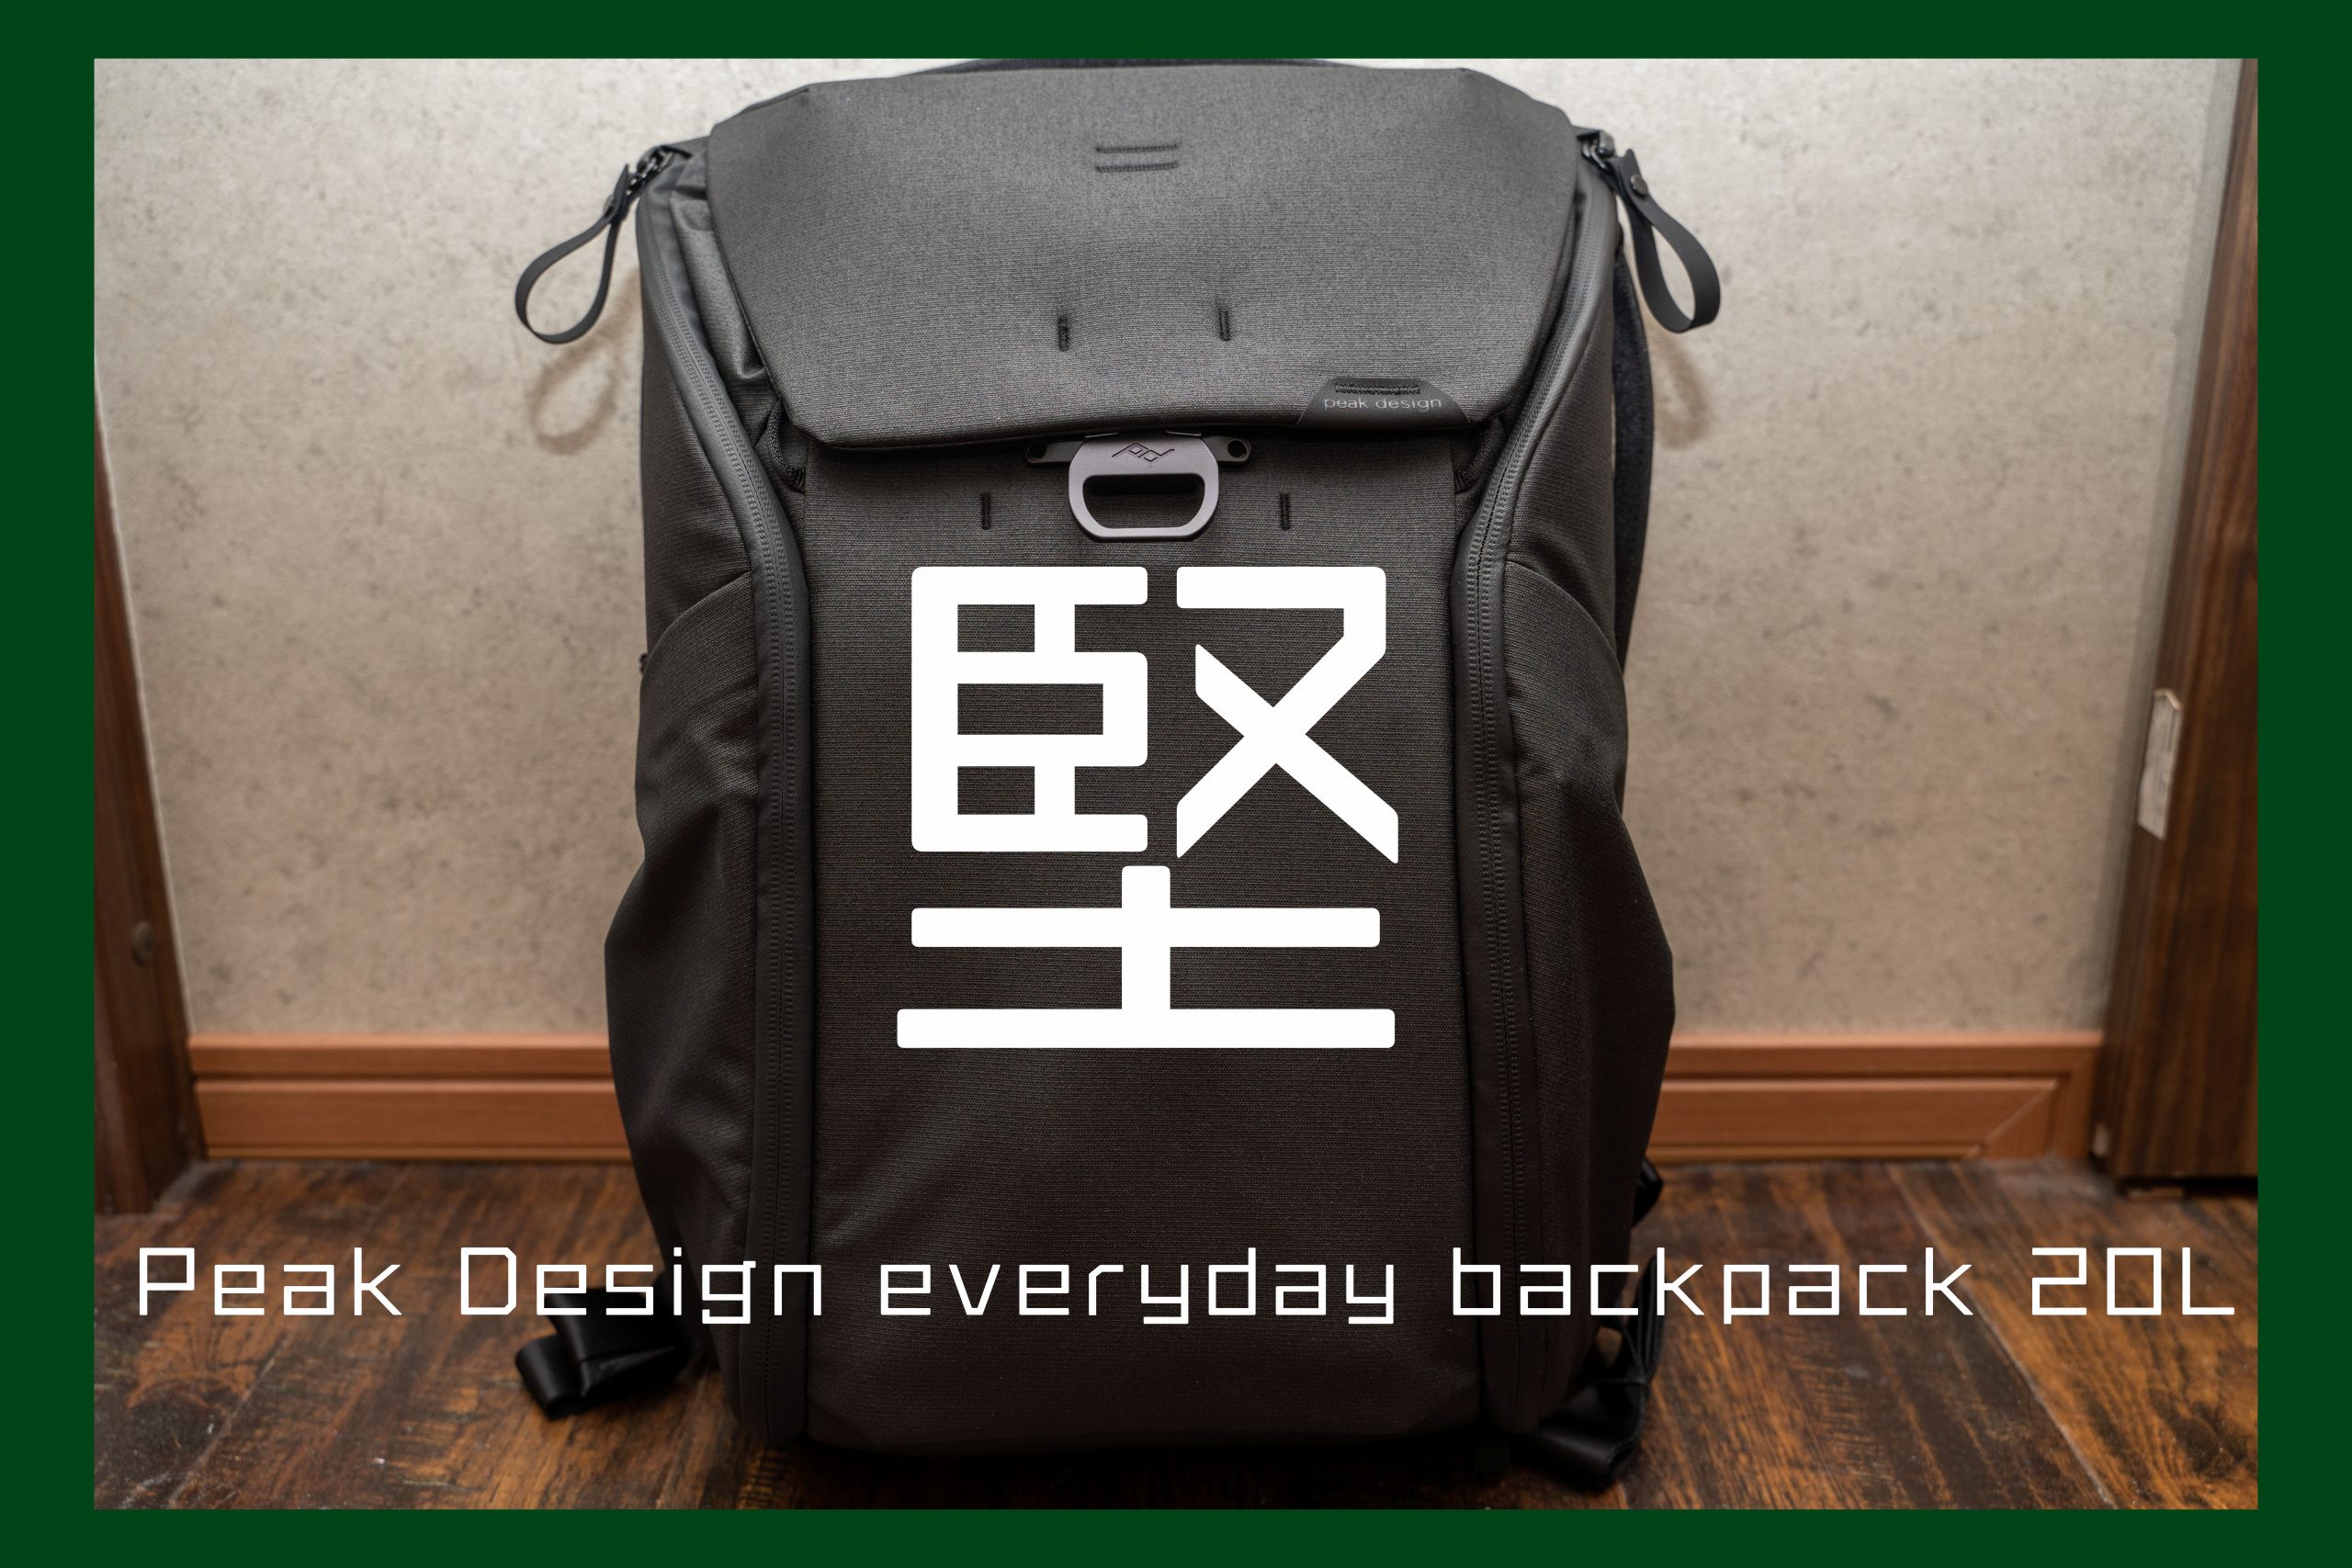 見事な堅牢性。『Peak Design everyday backpack 20L』を買いました